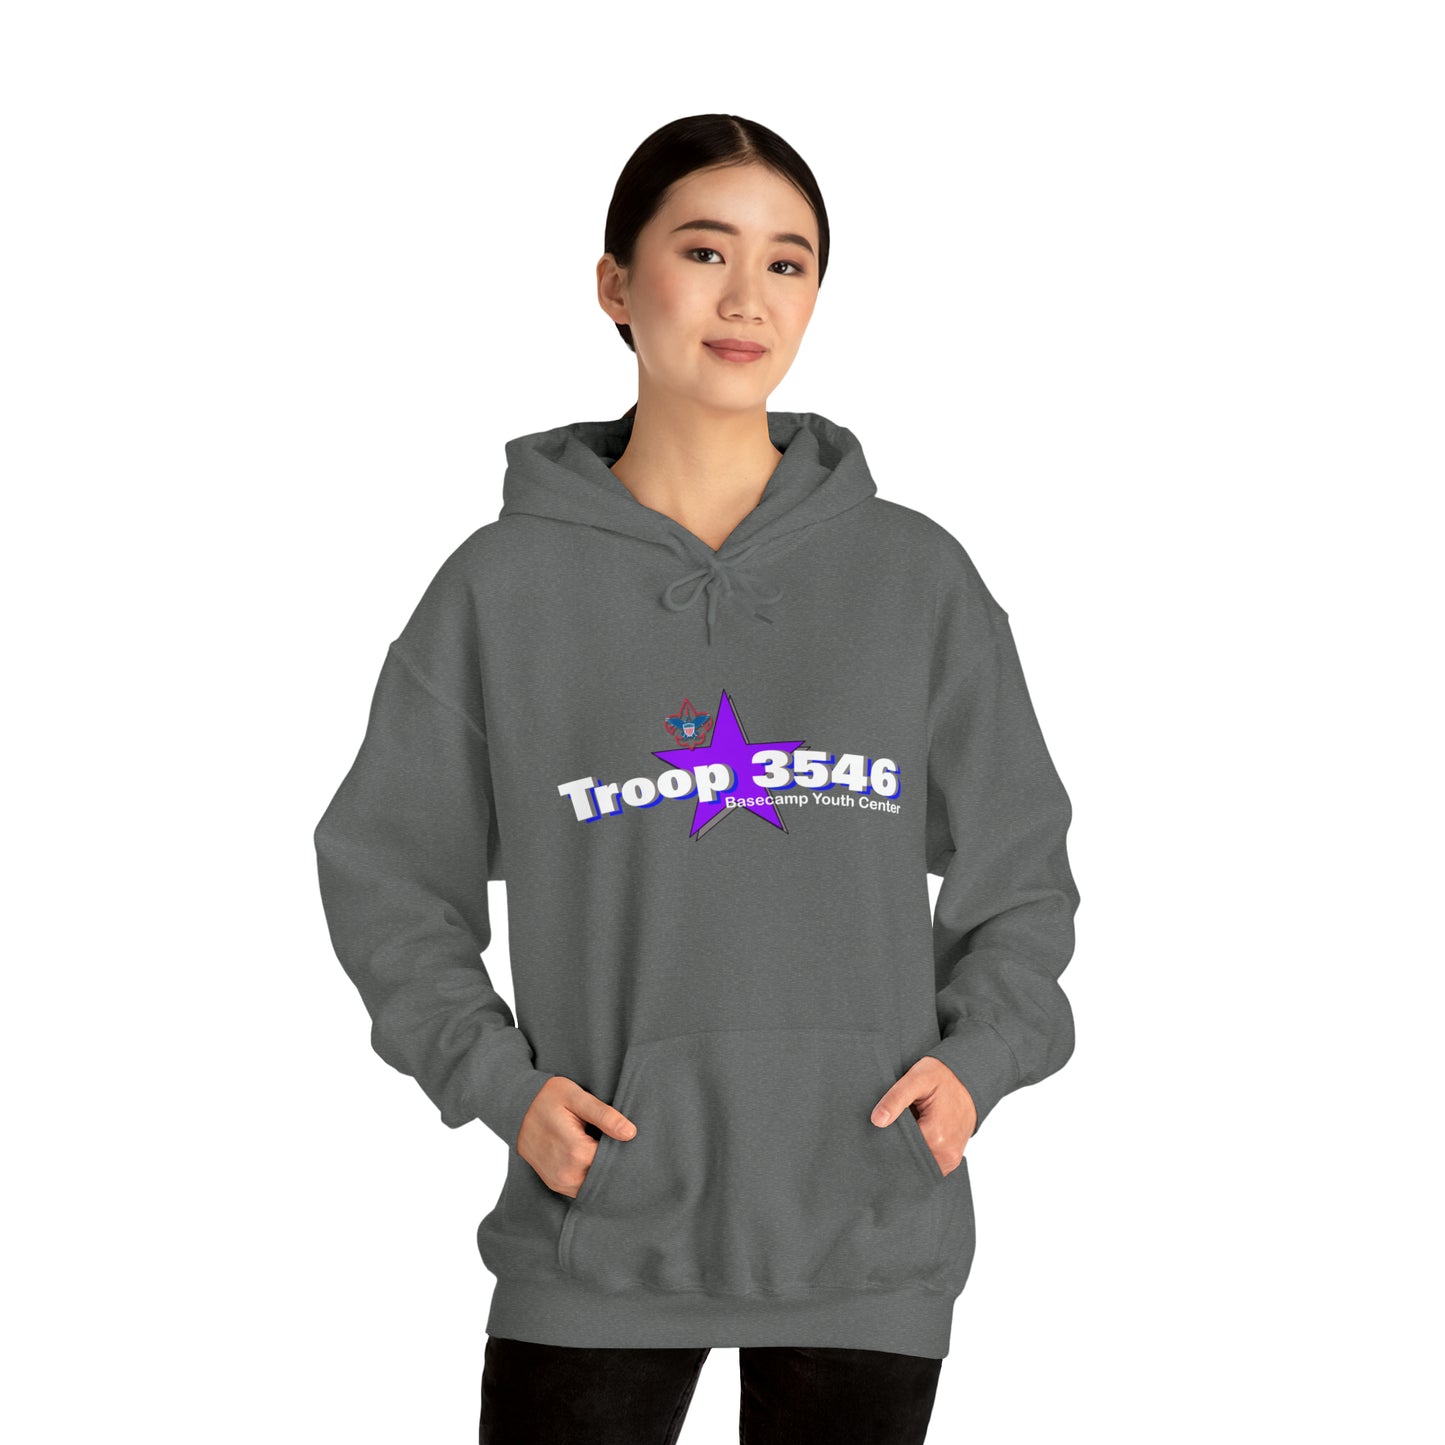 Troop 3546 - Cotton Hooded Sweatshirt